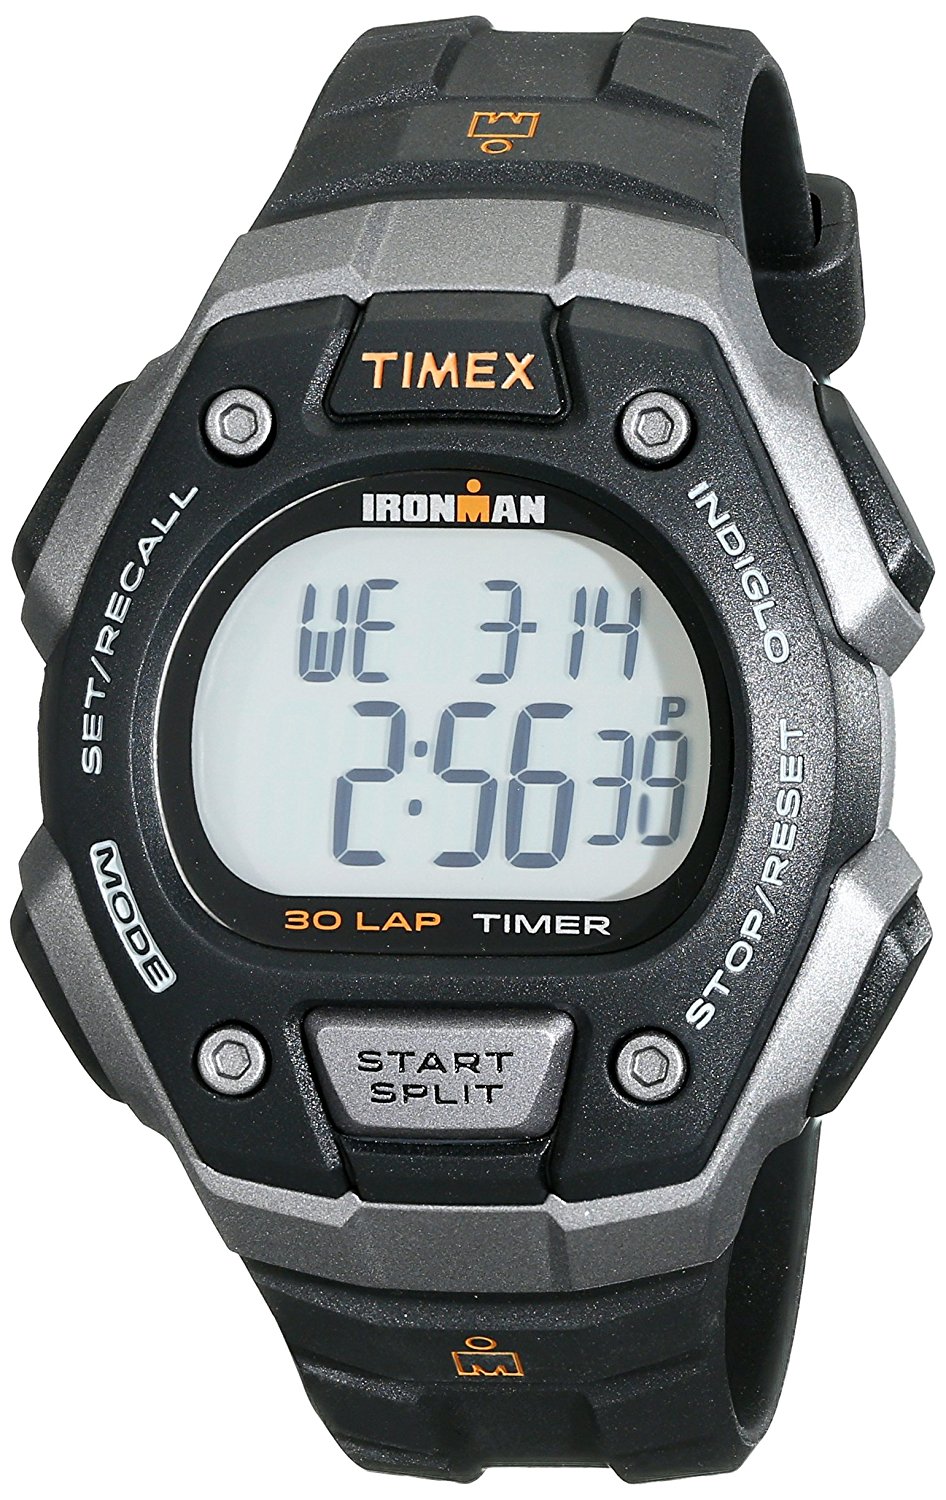 Timex Ironman Classic 30 Full-Size Watch - T5K8219J (Black)